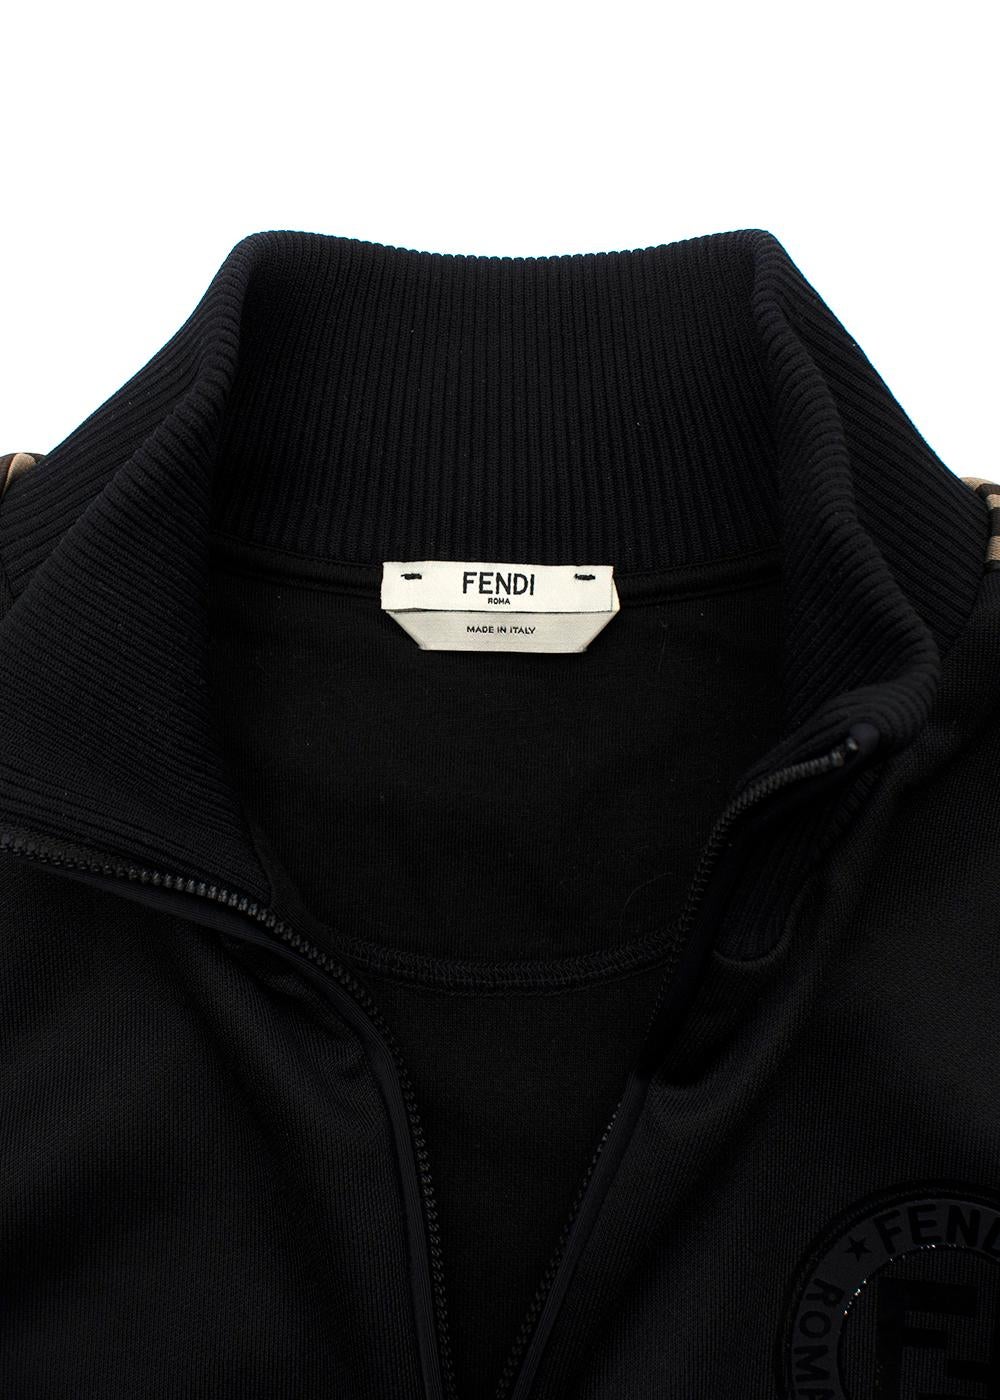 Fendi Black FF Trimmed Track Jacket (US 12) & Joggers (US 10) For Sale 5